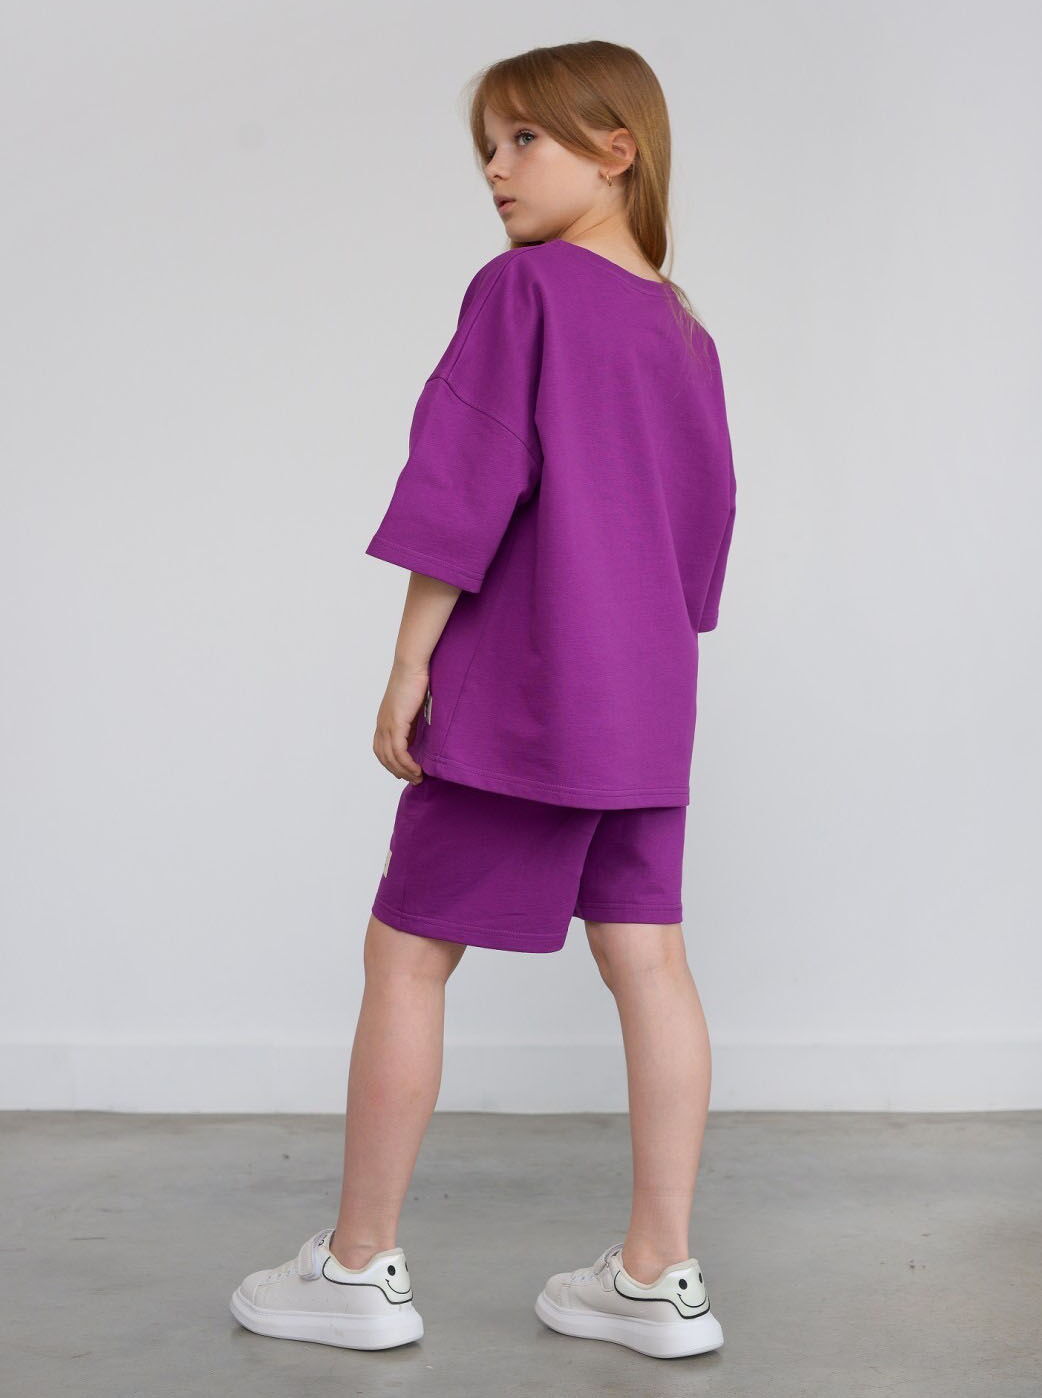 Костюм футболка и шорты для девочки Hart фиолетовый 1198 - размеры